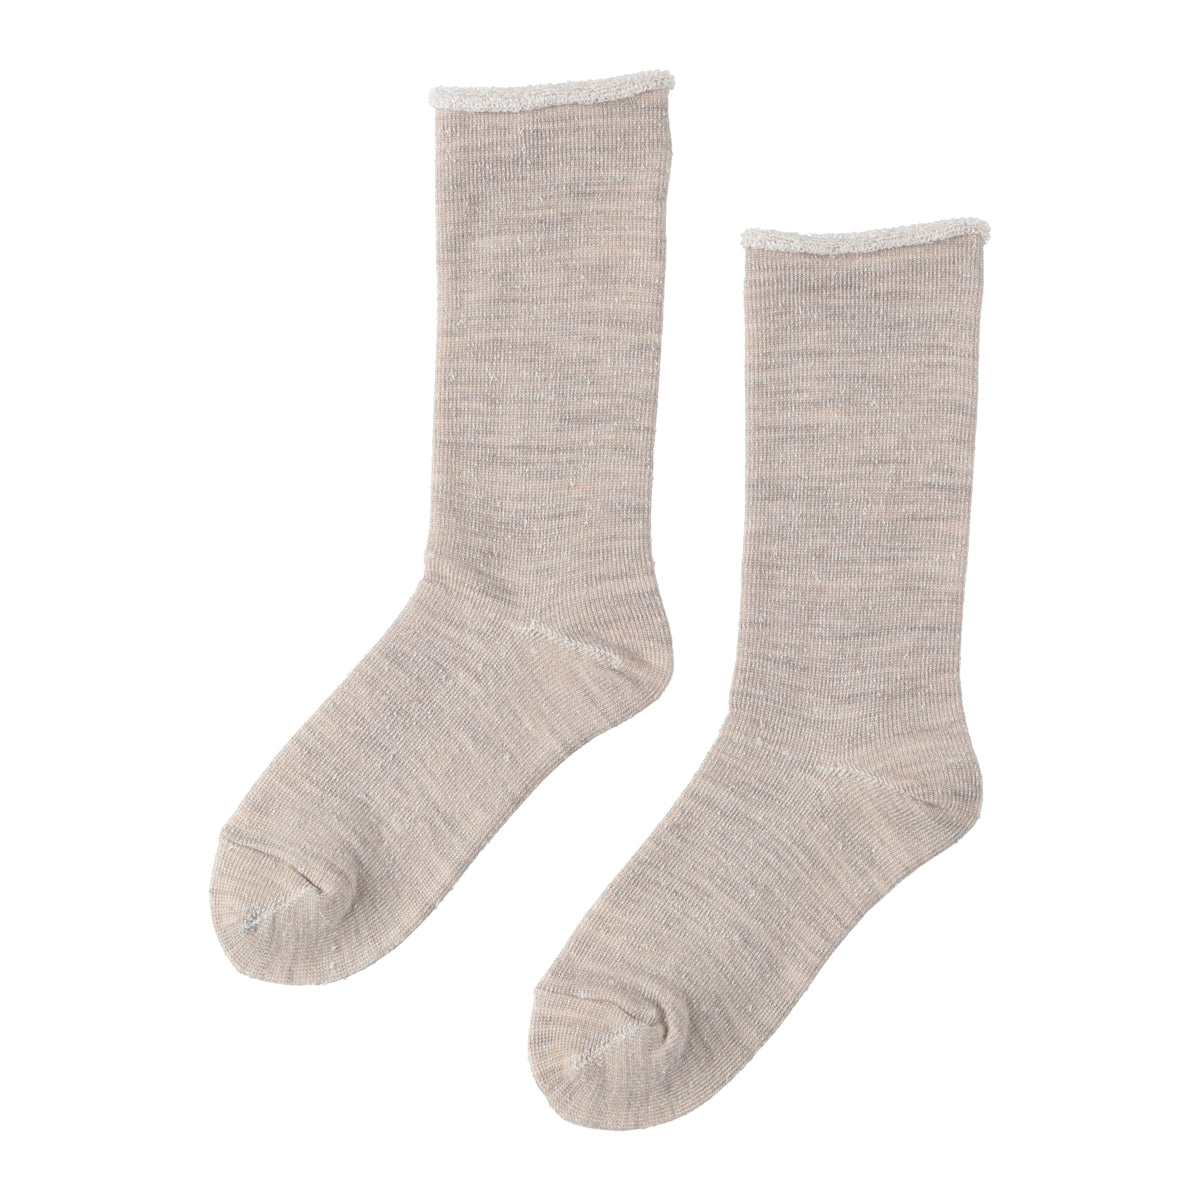 Pile Socks (GRAY)